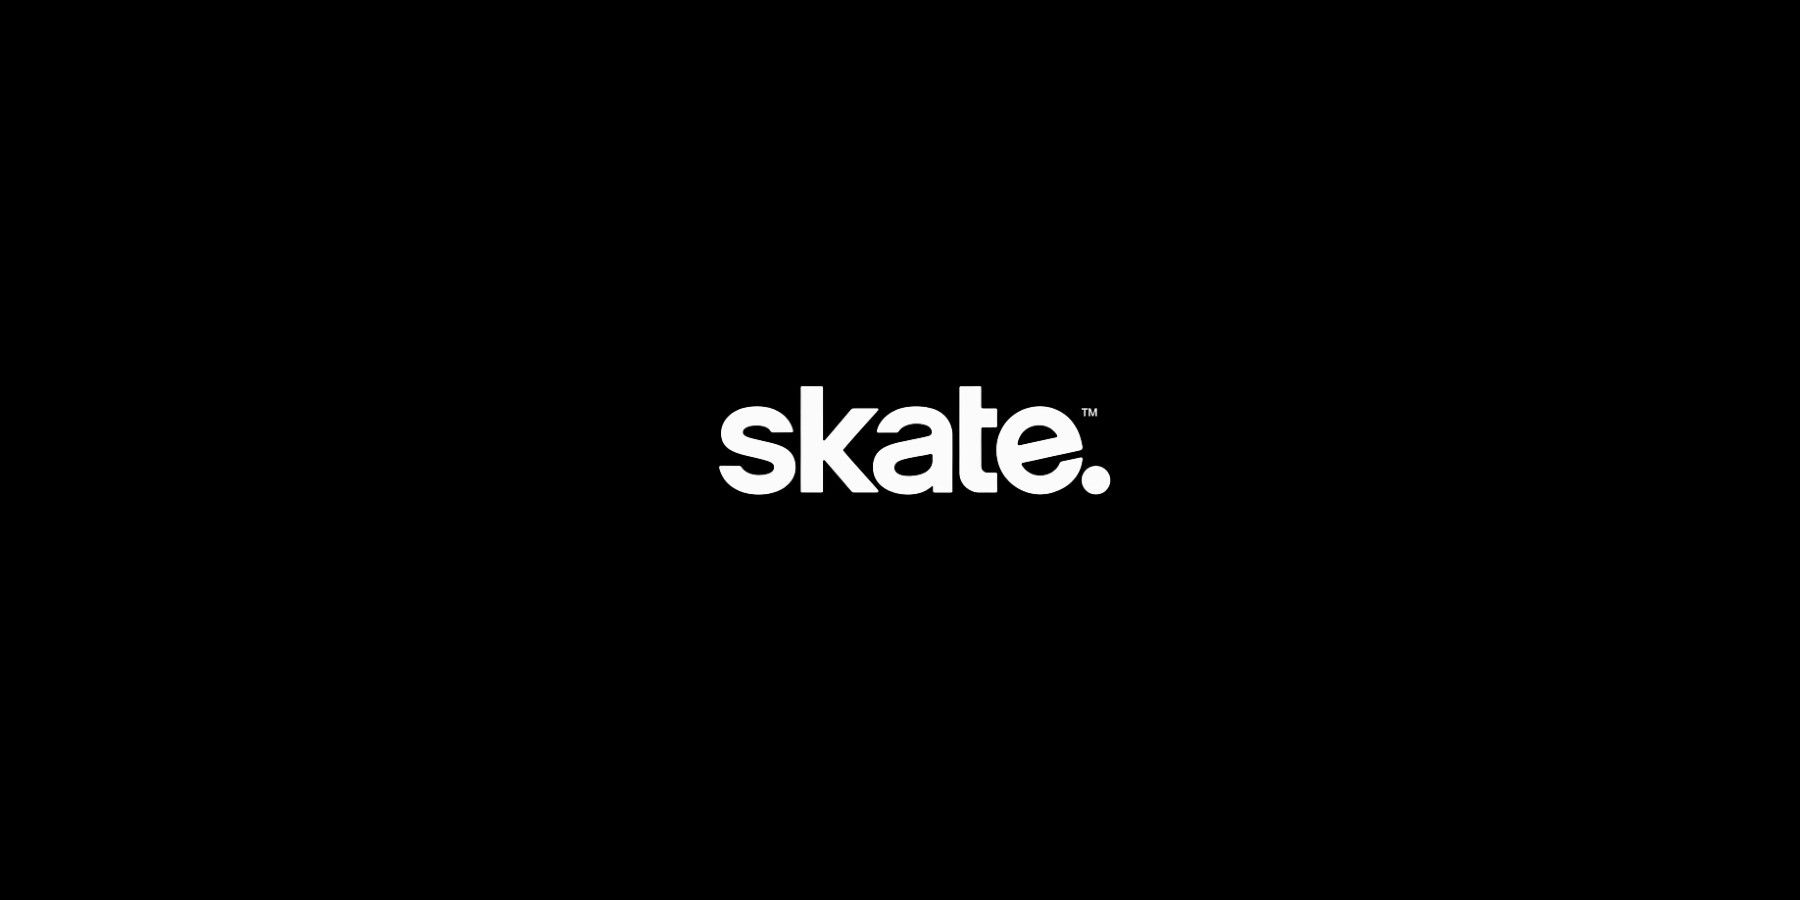 Skate 4 – Alpha Sign Up